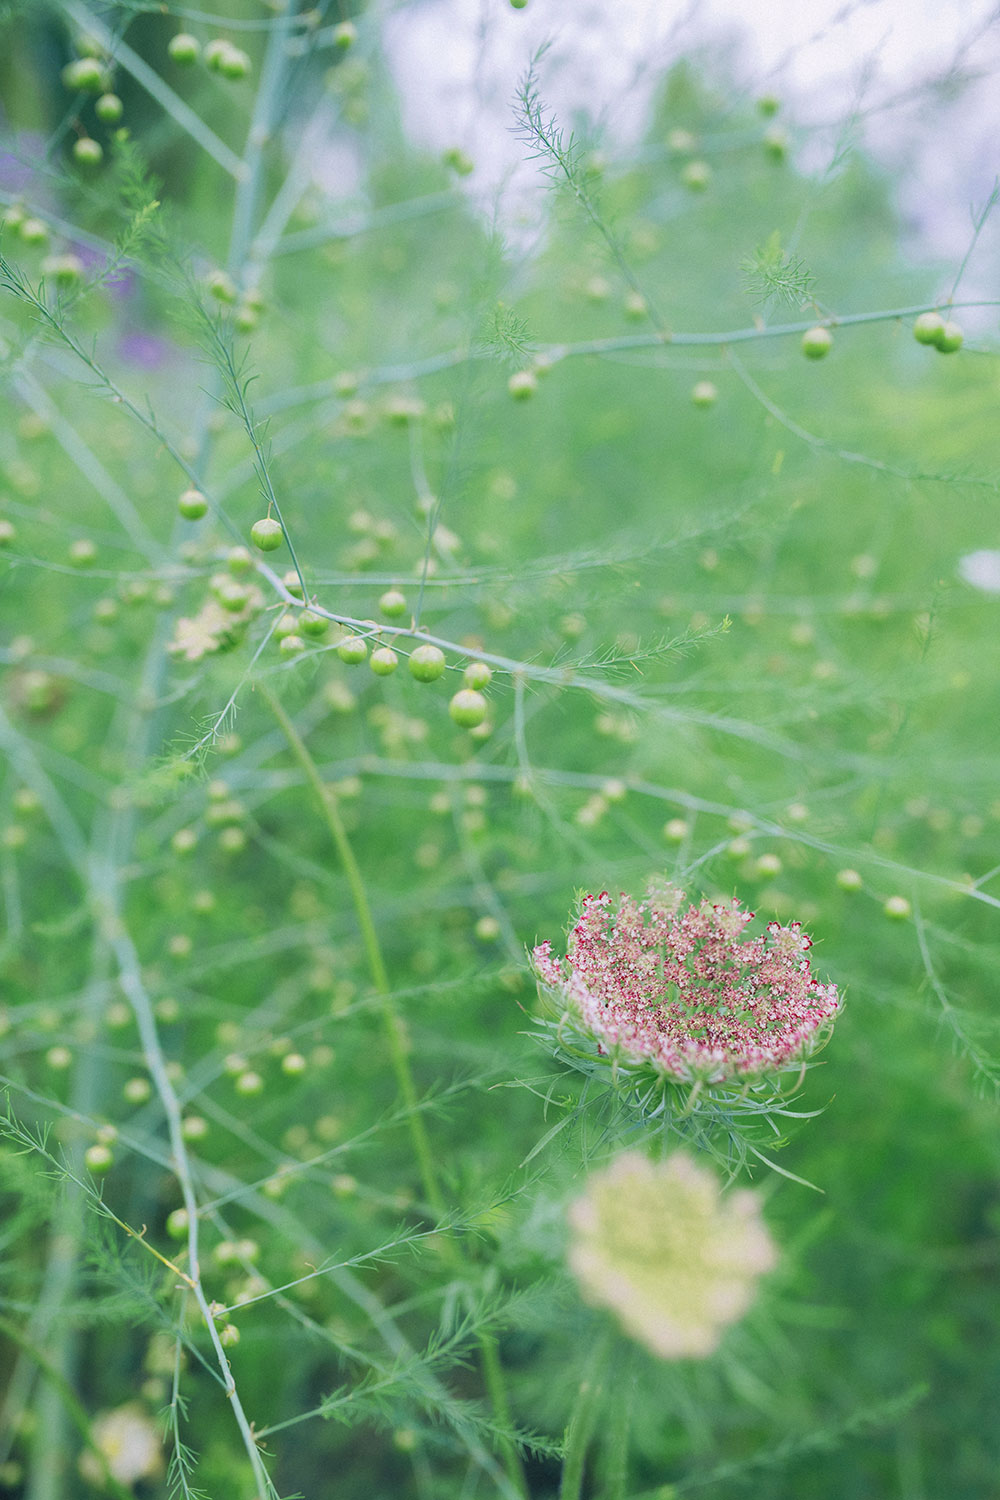 北海道 来訪者を癒すガーデン 風が心地よい 心づくしの庭園 大地の鼓動に抱かれる 北海道ガーデン紀行へ 写真 8枚目